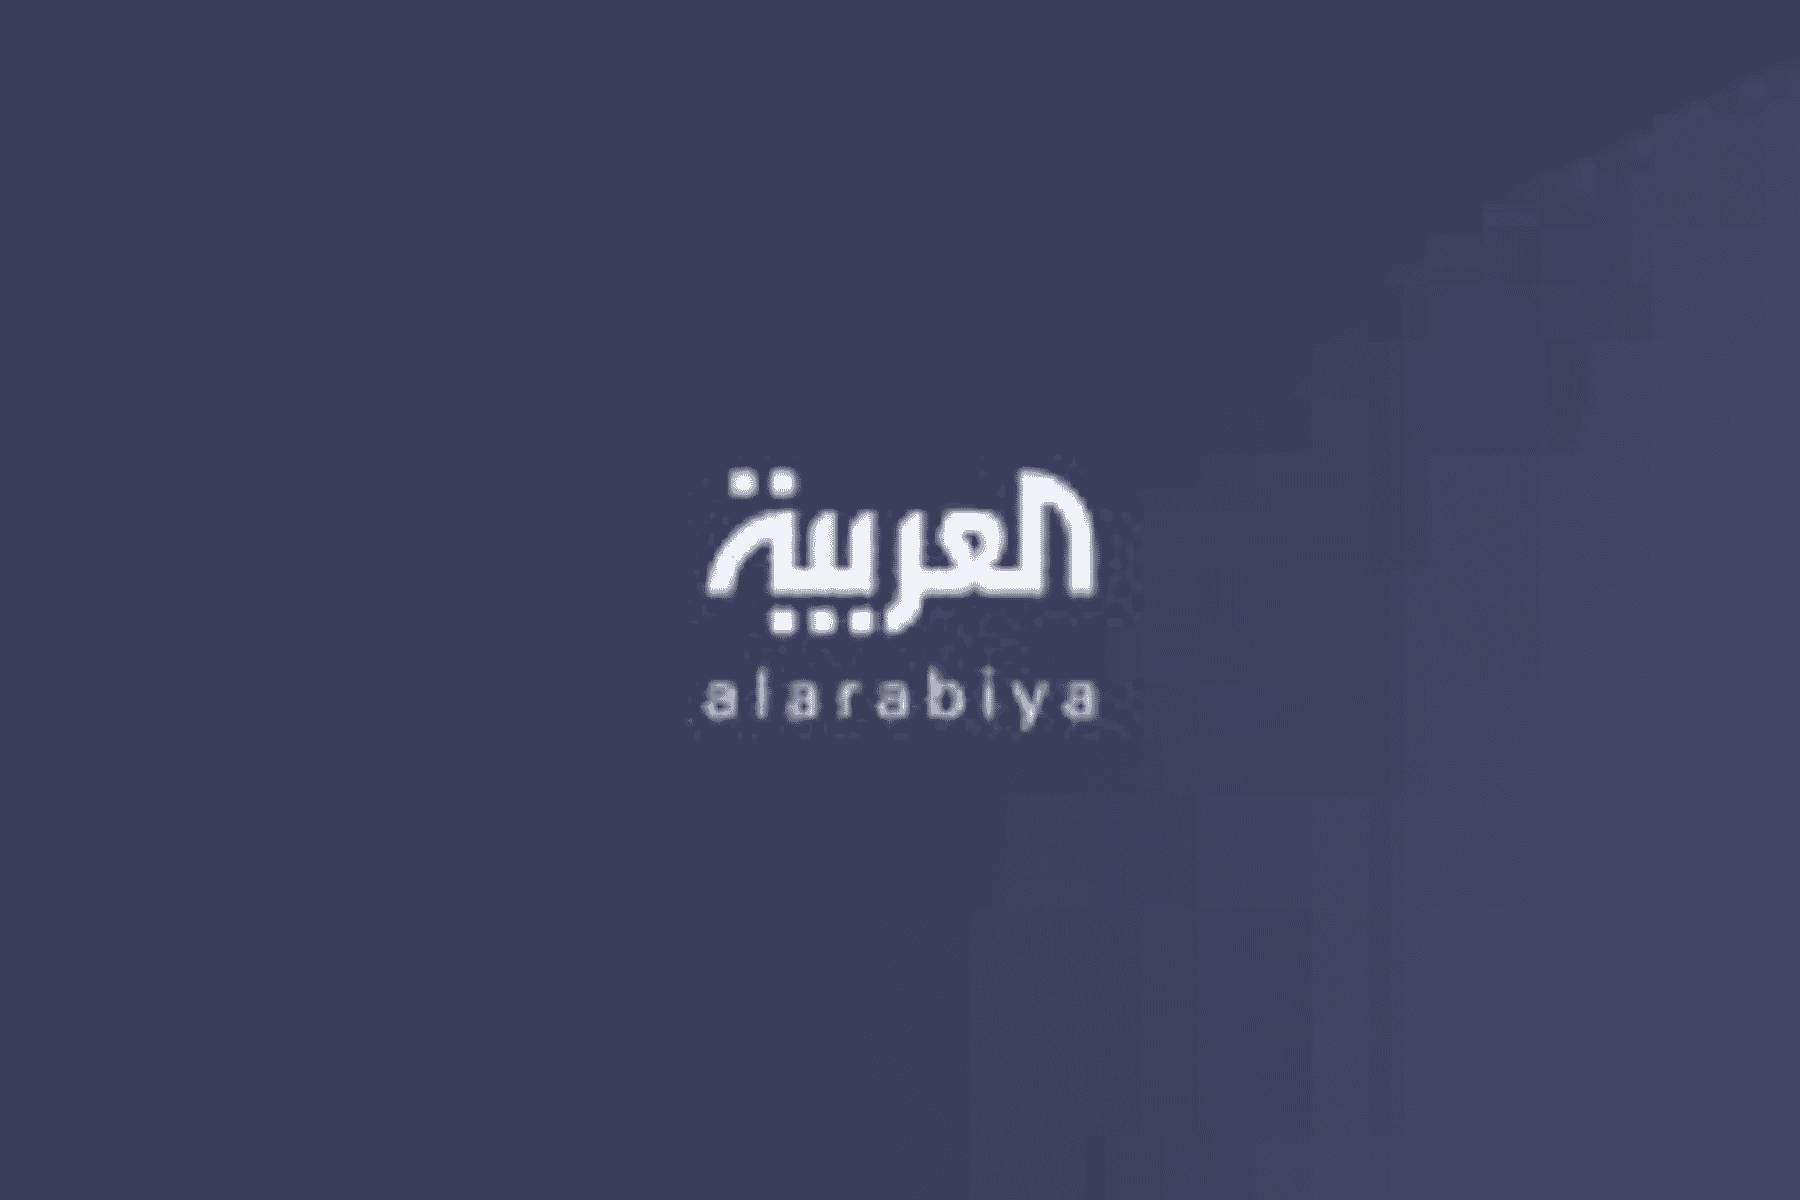 قناة العربية الجيش التركي watanserb.com